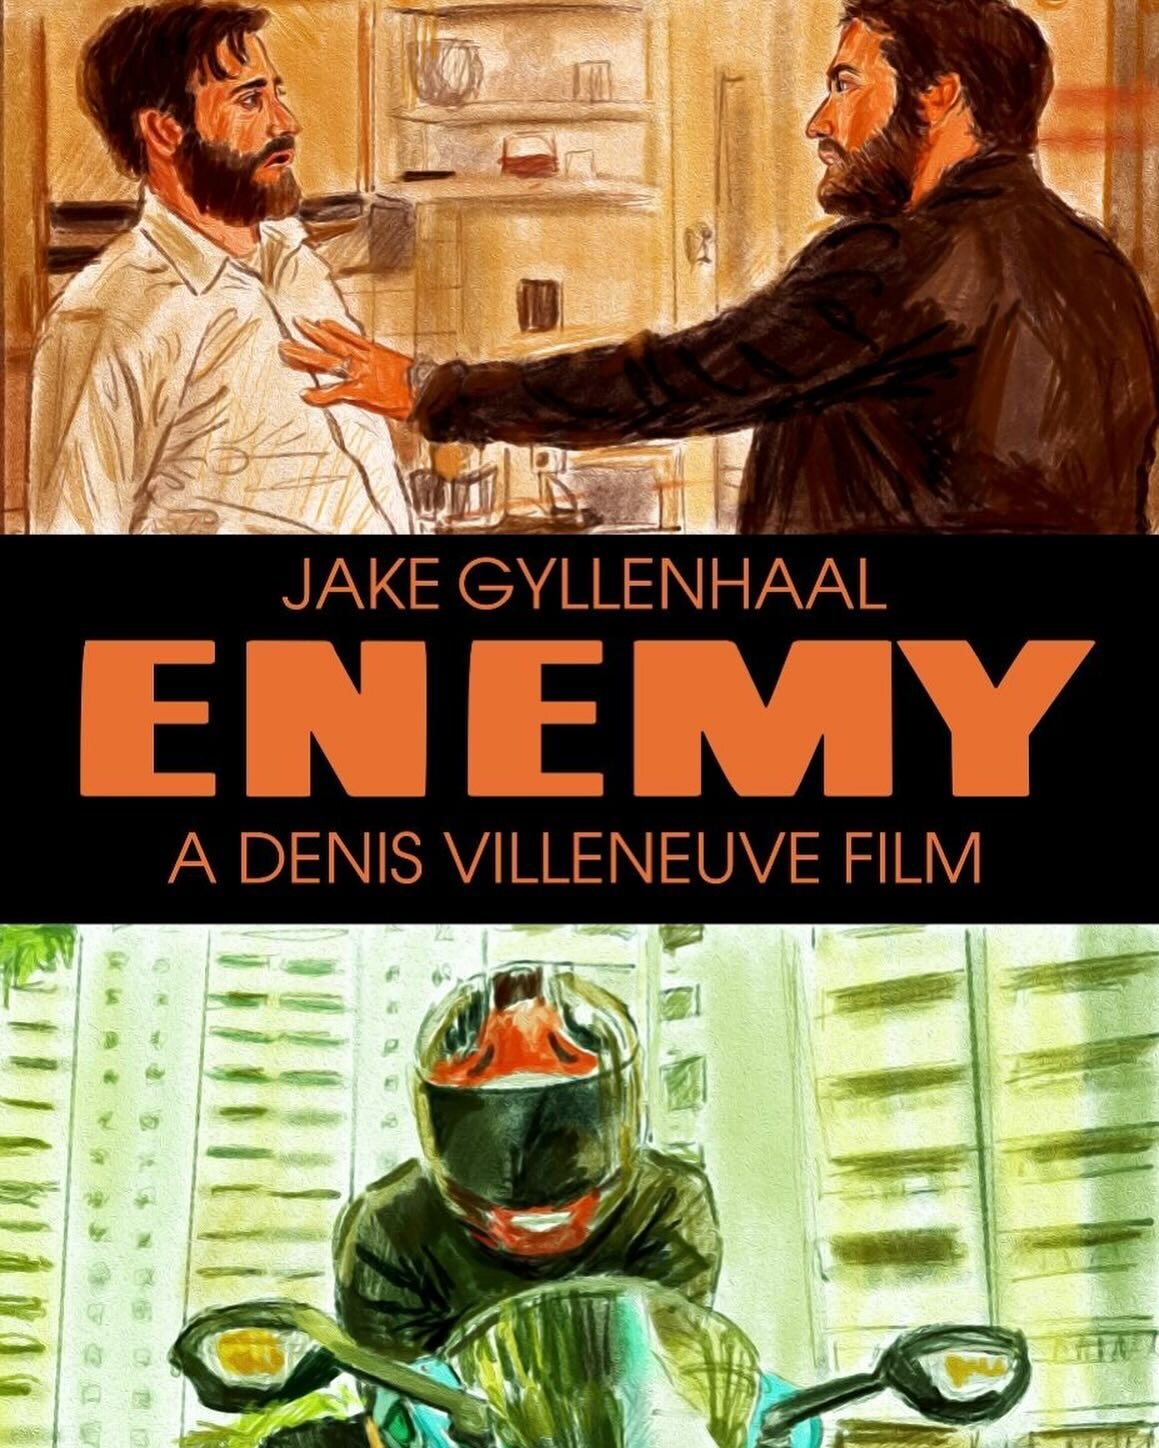 #jakegyllenhaal #enemy #denisvilleneuve 
 #art #illustration #movies #movieart
#drawing #posterart #movieposter #filmart #poster #fanart #filmposter #digitalart #digitalpainting #alternativeposter